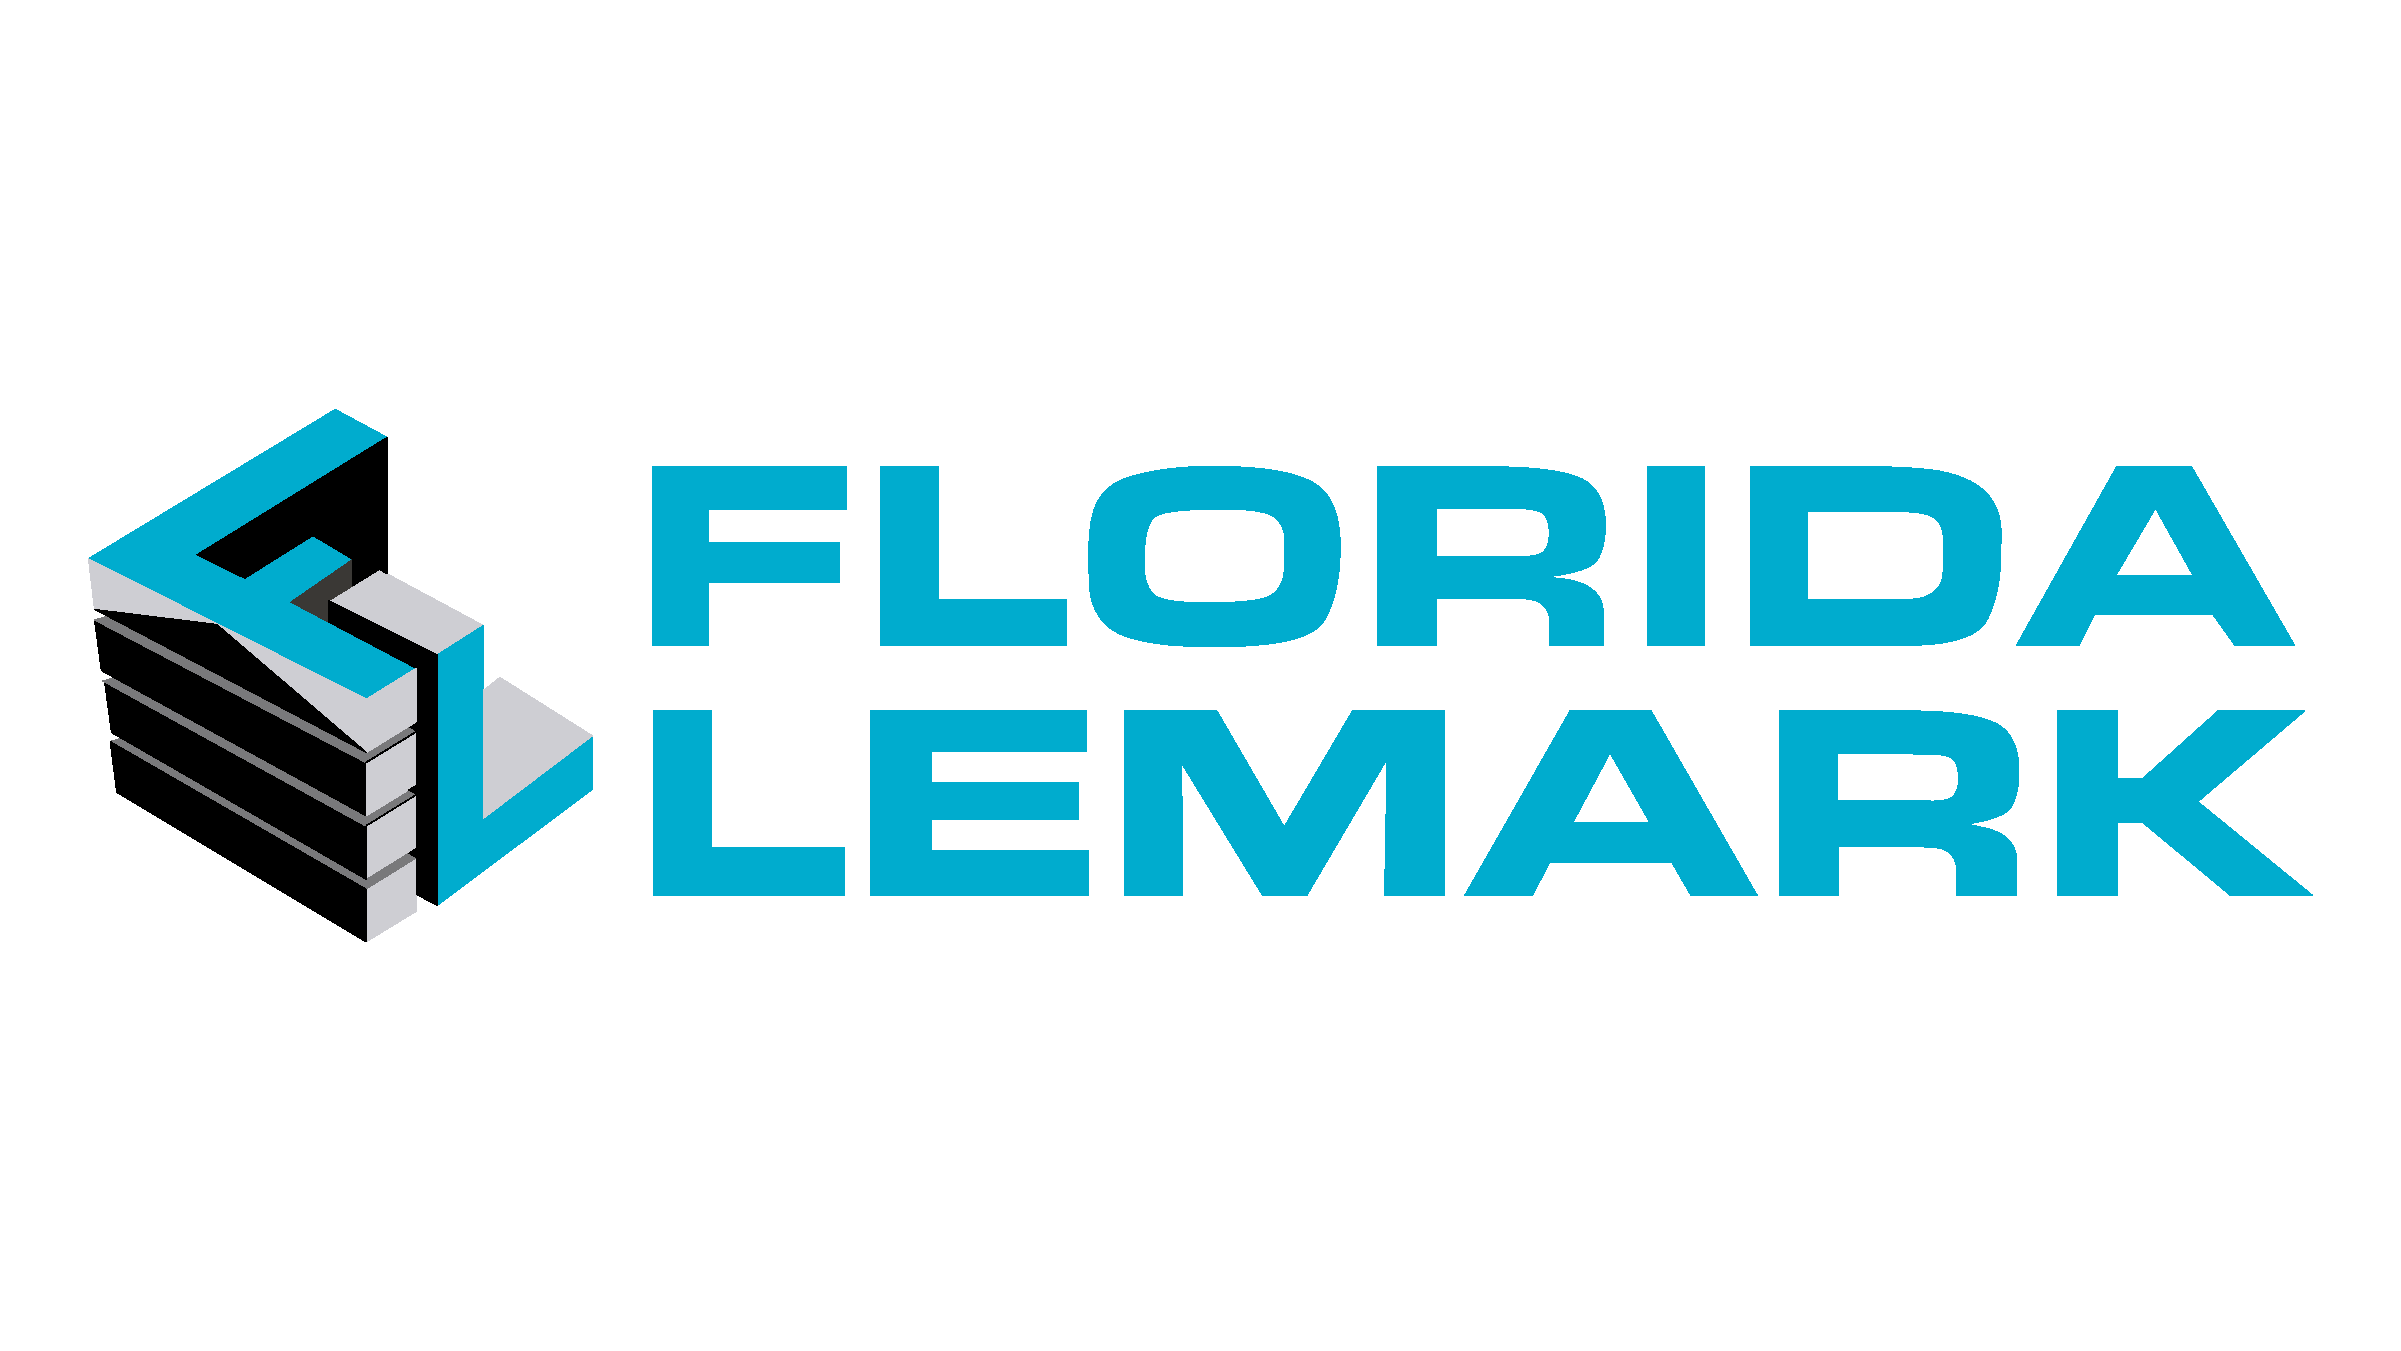 Florida Lemark Corp